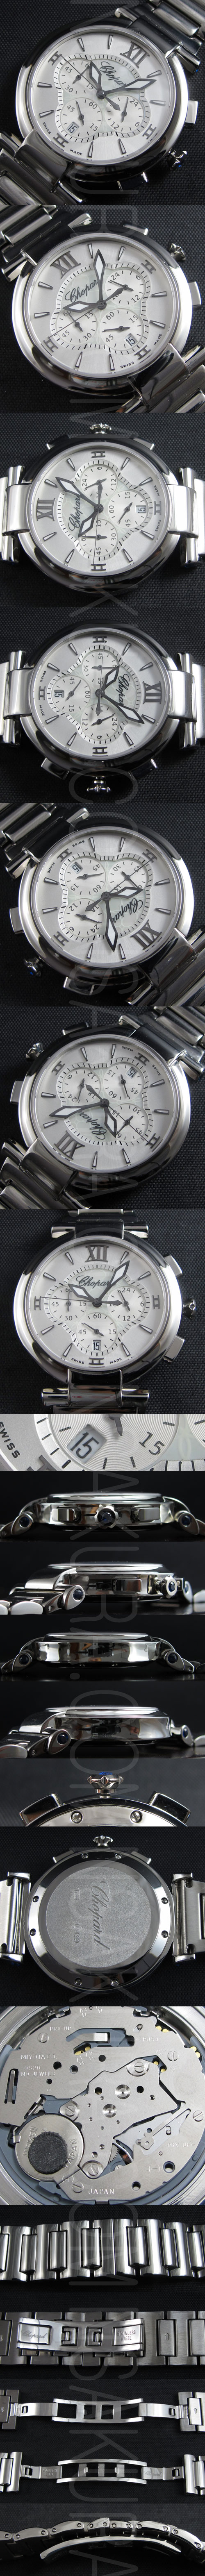 大人気腕時計ショパールインペリアル(ホワイトダイヤル、クロノグラフ機能付き)